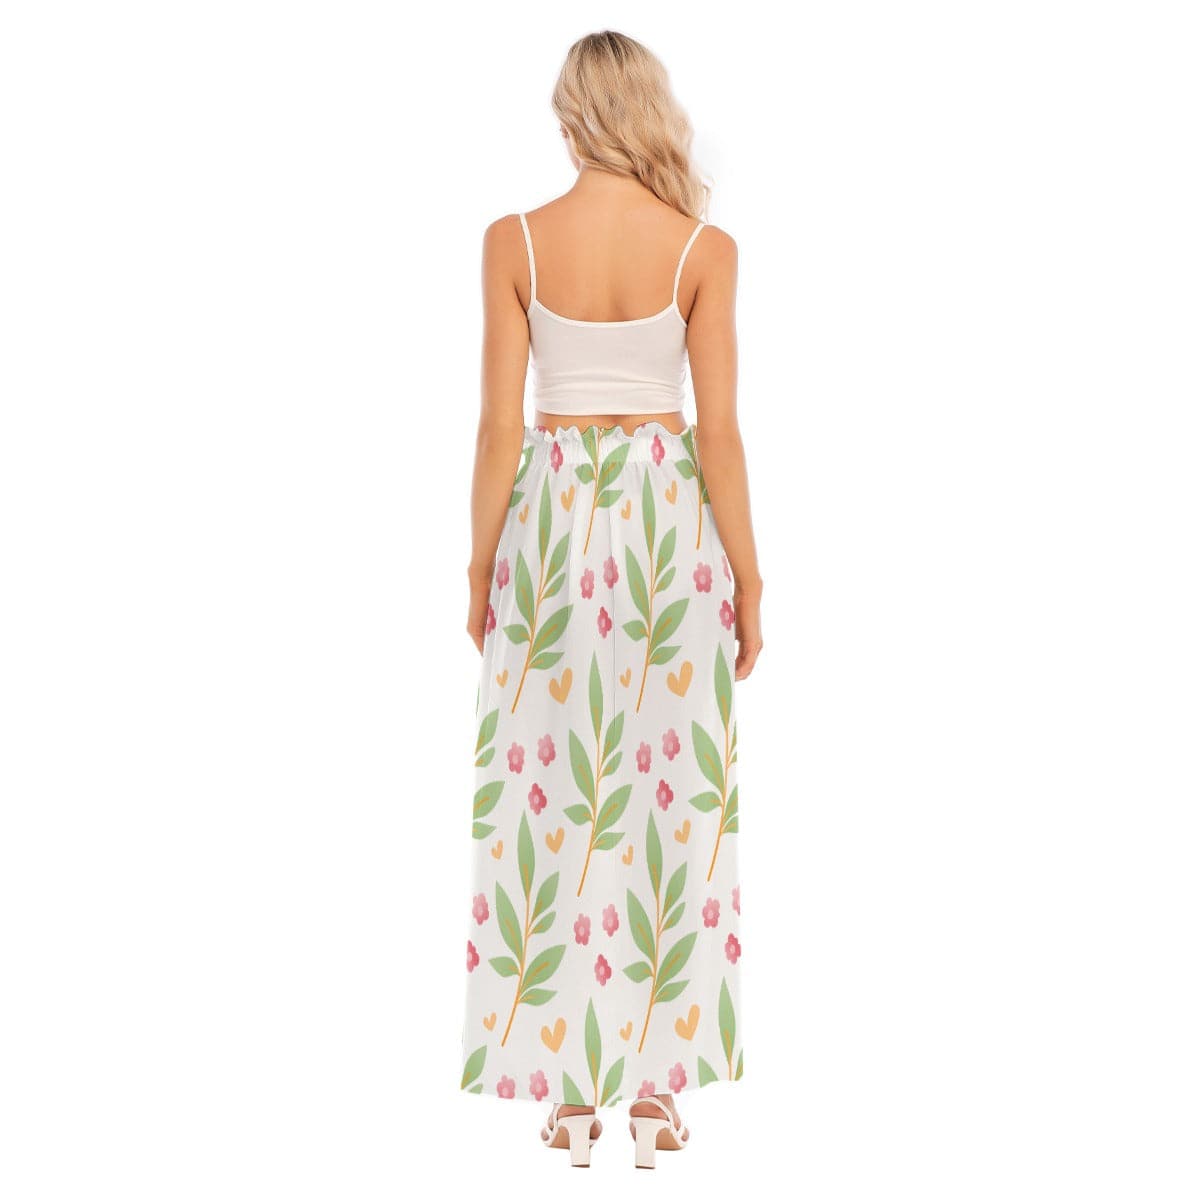 Yoycol Skirt Sheer Blossoms - Women's Side Split Skirt